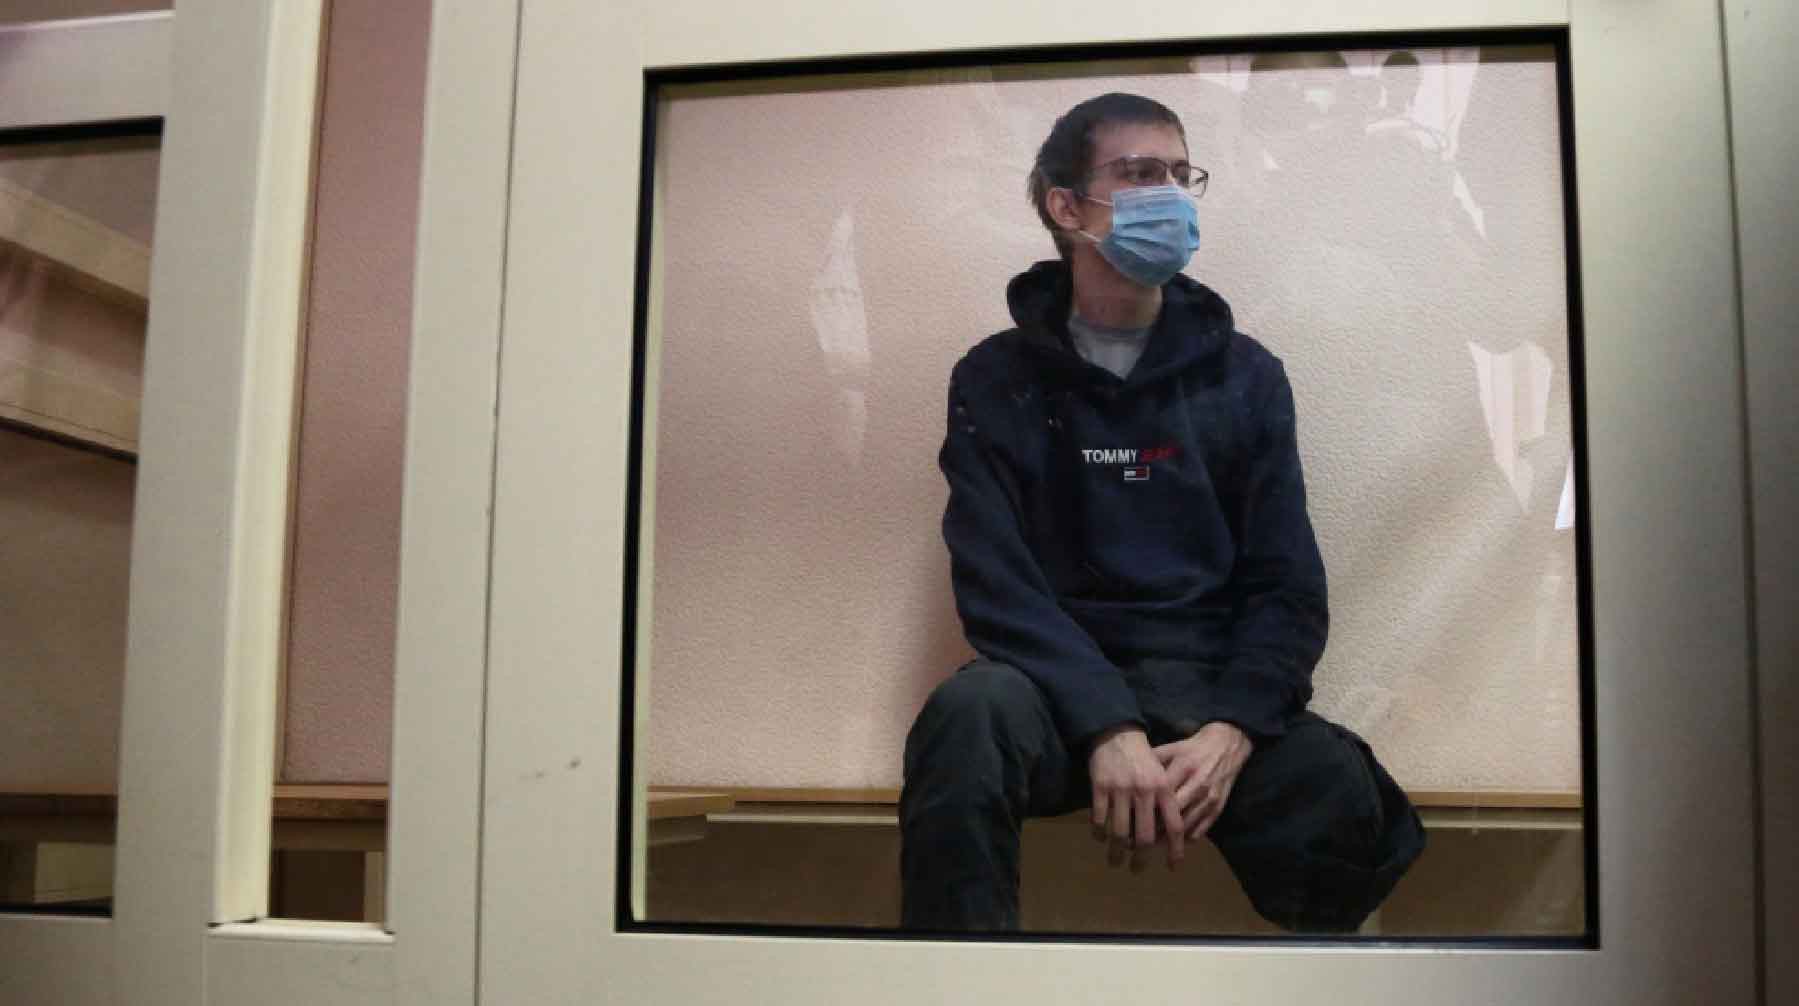 Тимур Бекмансуров, обвиняемый в массовом убийстве в Пермском государственном университете, в Дзержинском районном суде Перми, где рассматривается ходатайство следствия о продлении его ареста